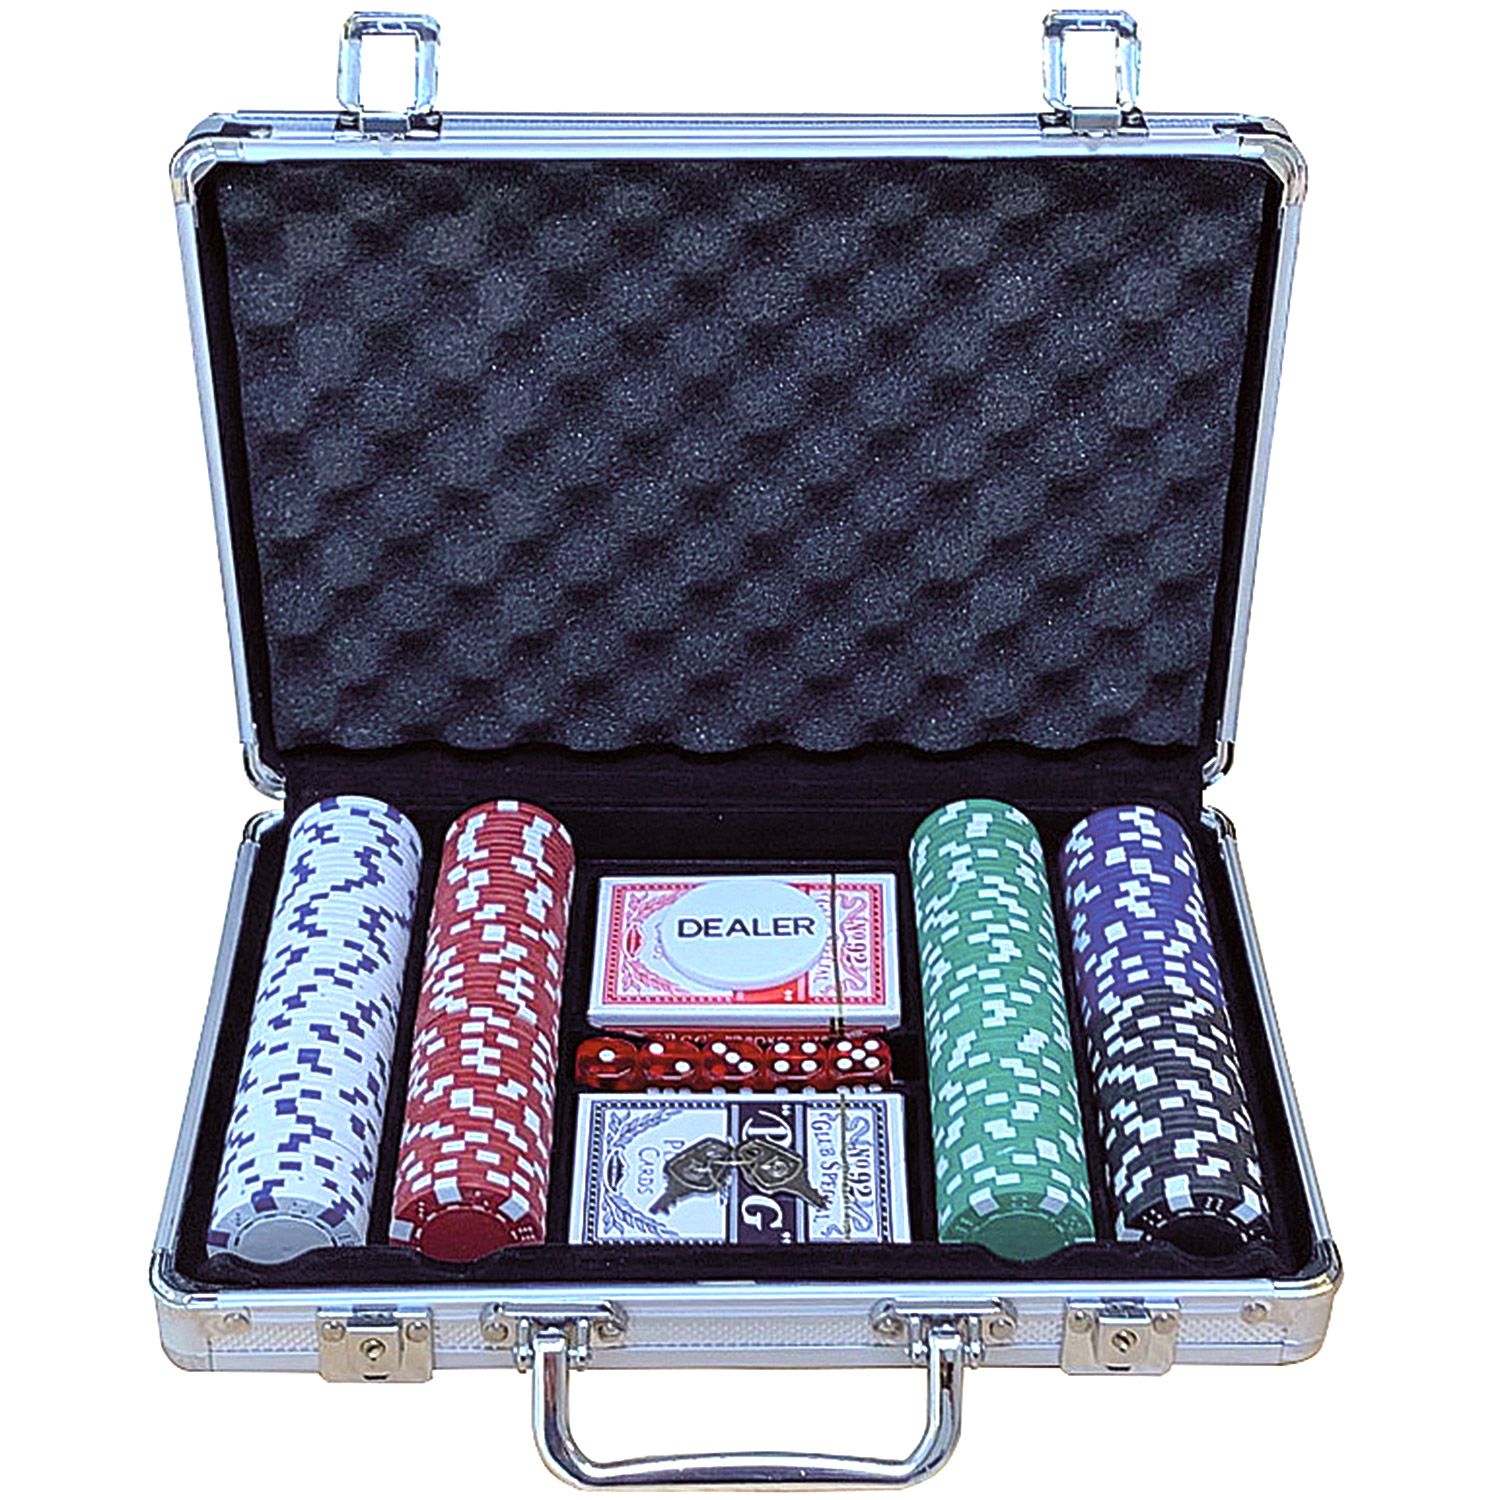 Poker set case aluminum 200 chips